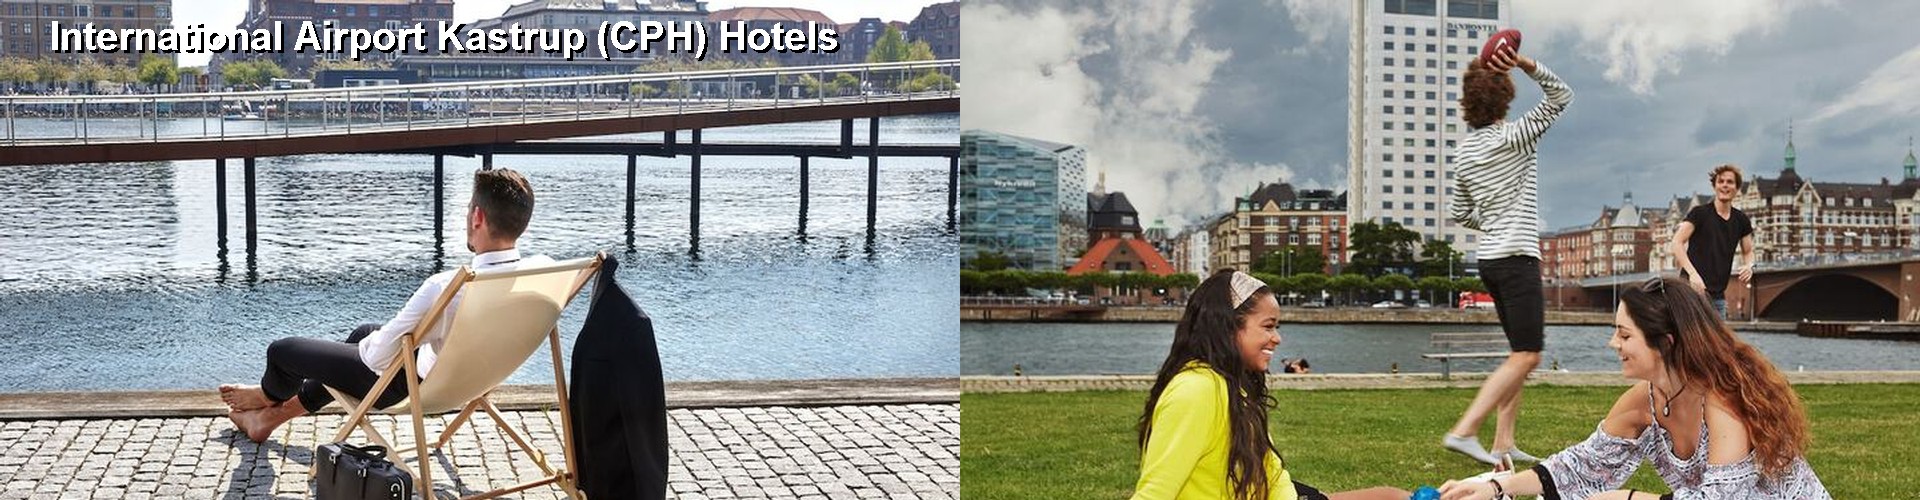 5 Best Hotels near International Airport Kastrup (CPH)